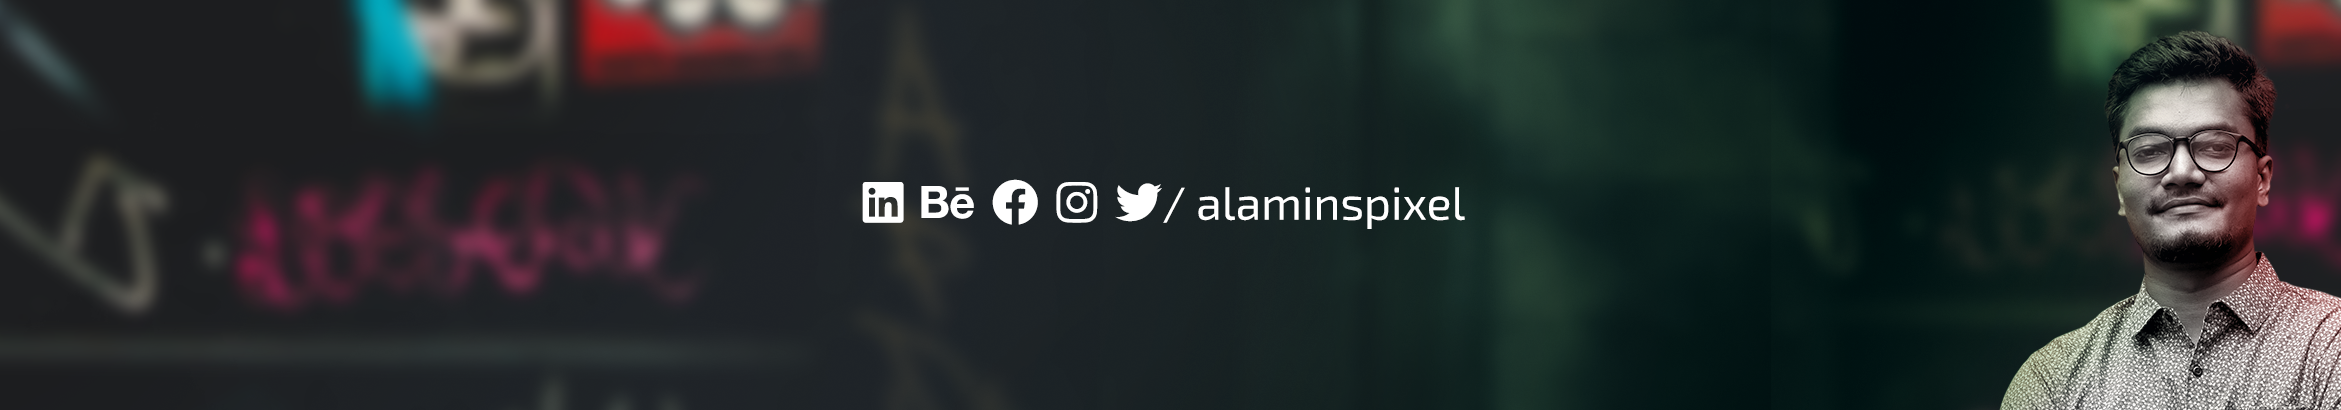 Md. Al Amin's profile banner